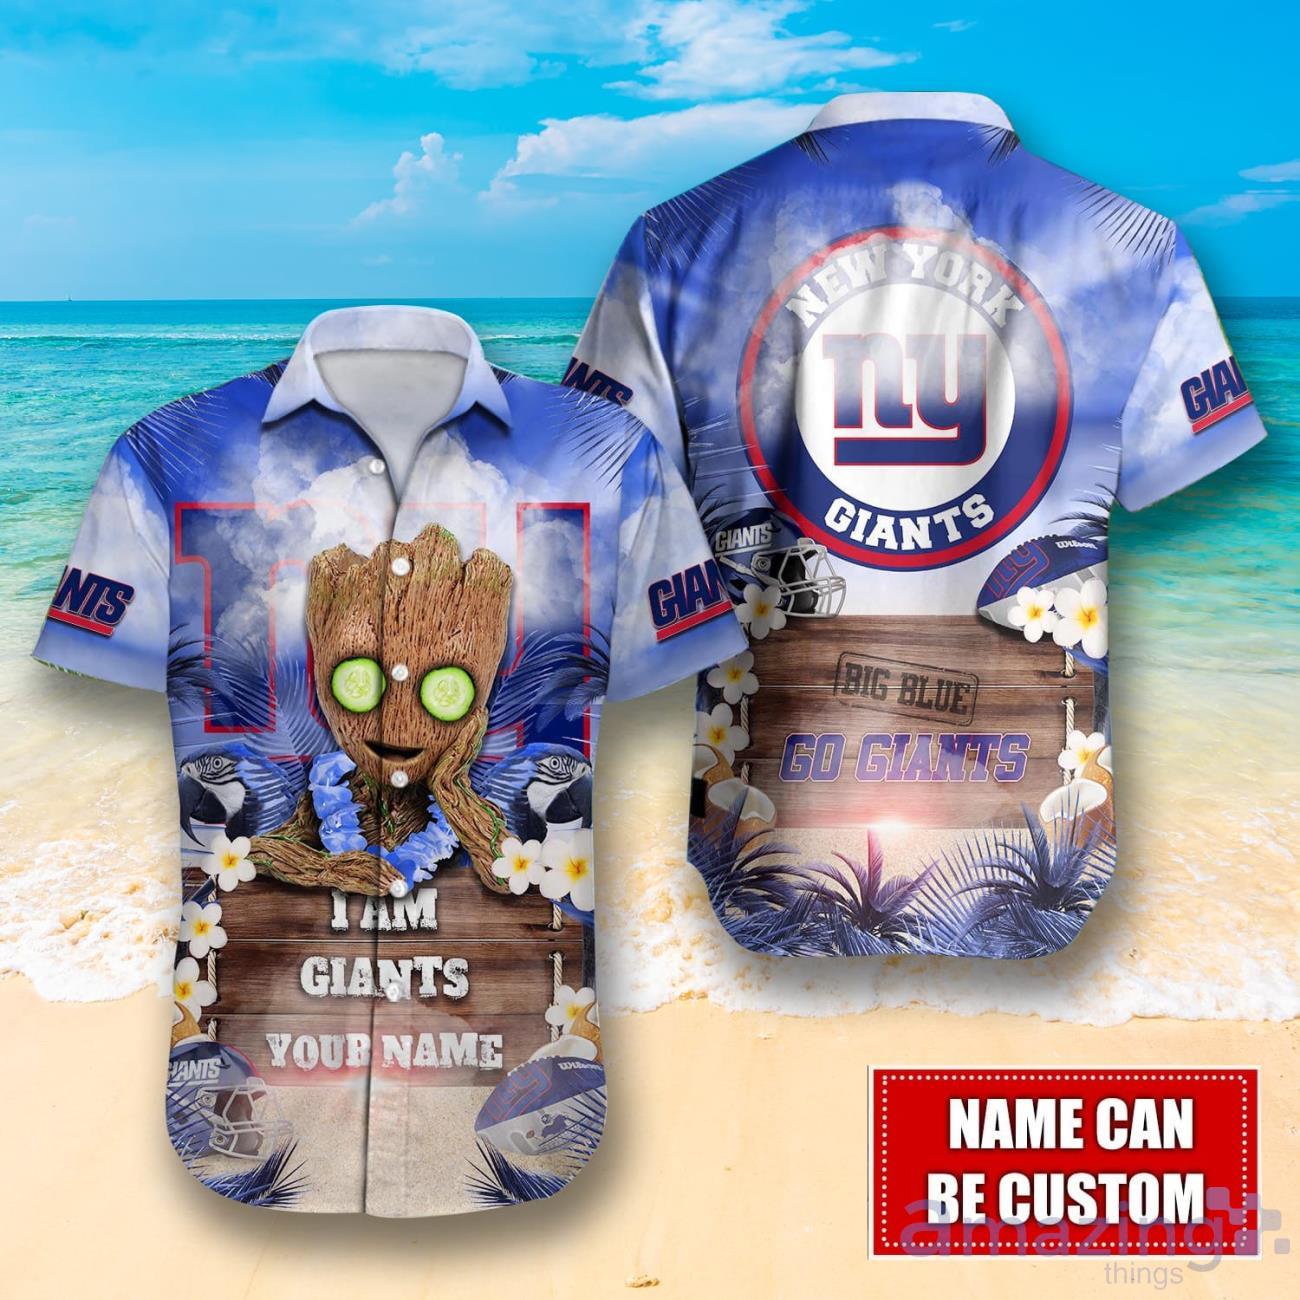 New York Giants NFL Design 2 Beach Hawaiian Shirt Men And Women For Fans  Gift - Banantees